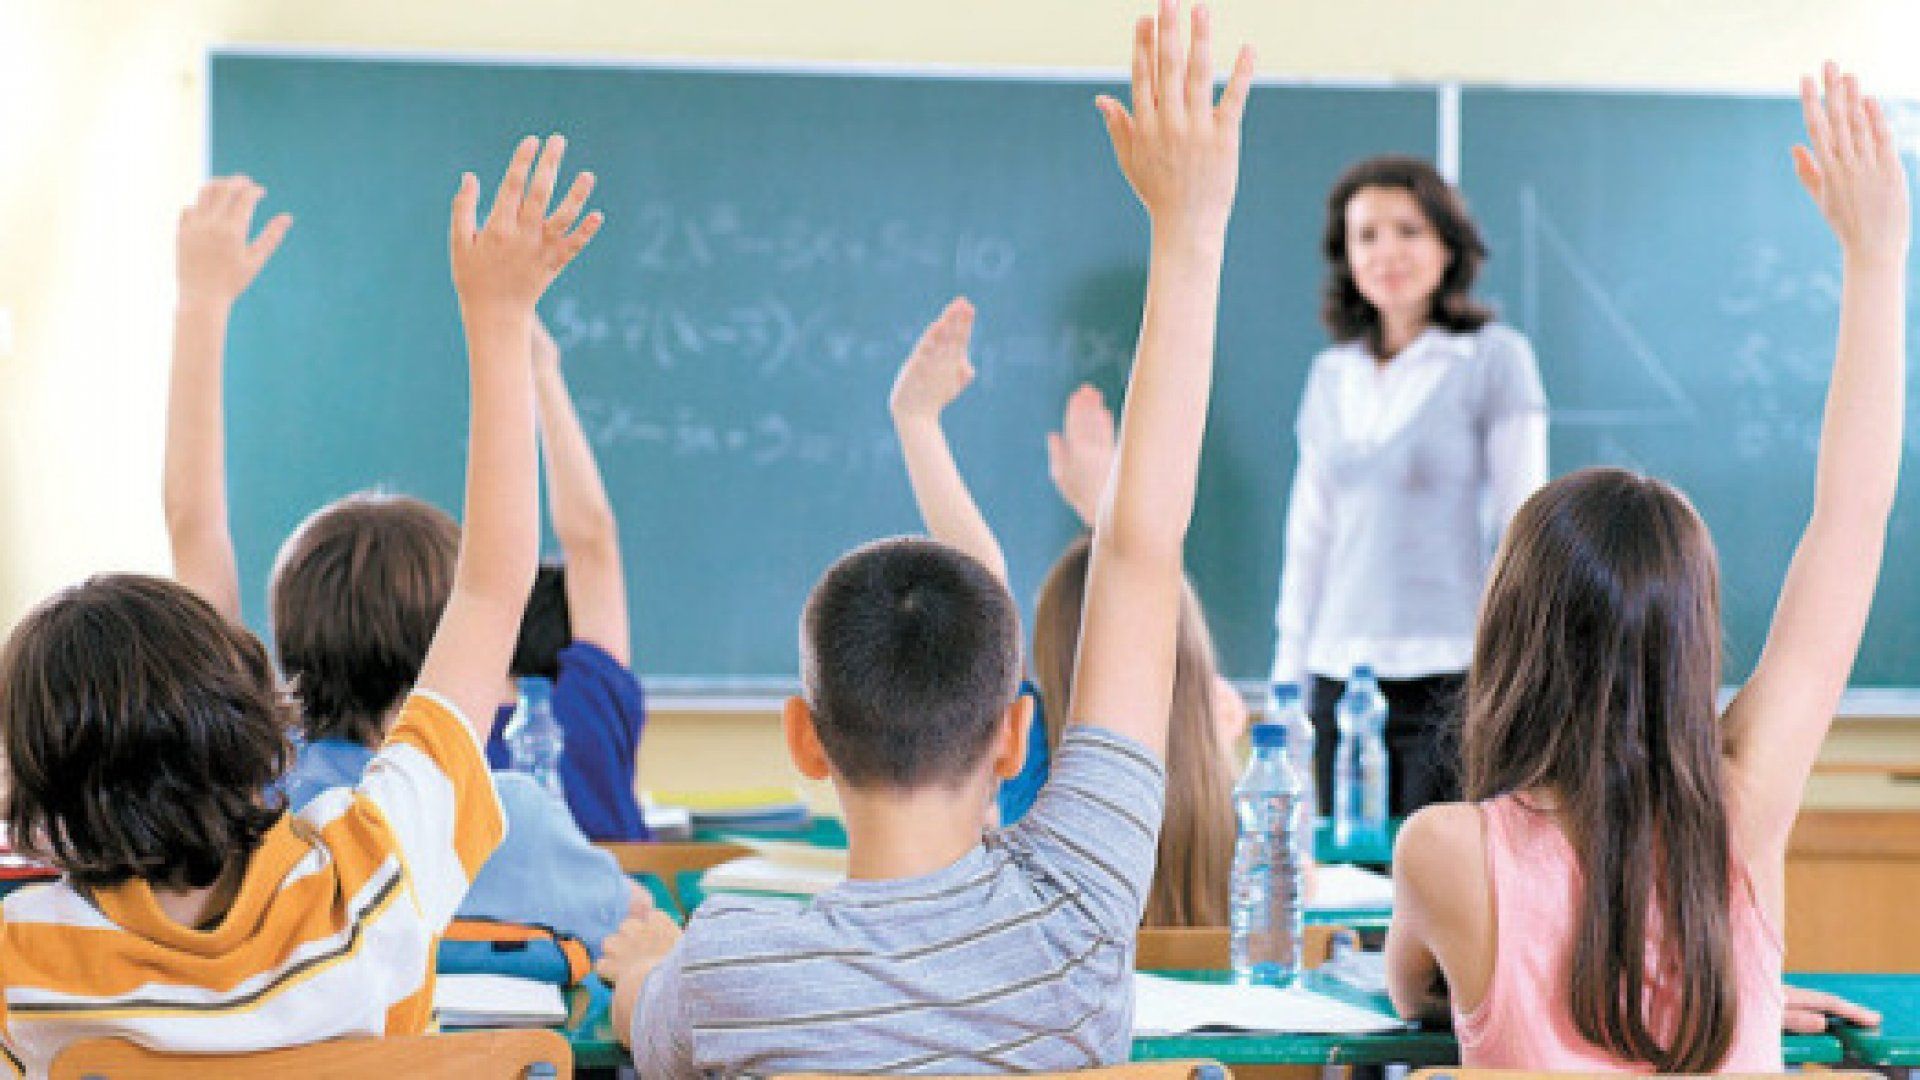 Peste 7.000 de profesori lipsesc în școlile din R. Moldova. Ministrul Educației explică care este cauza